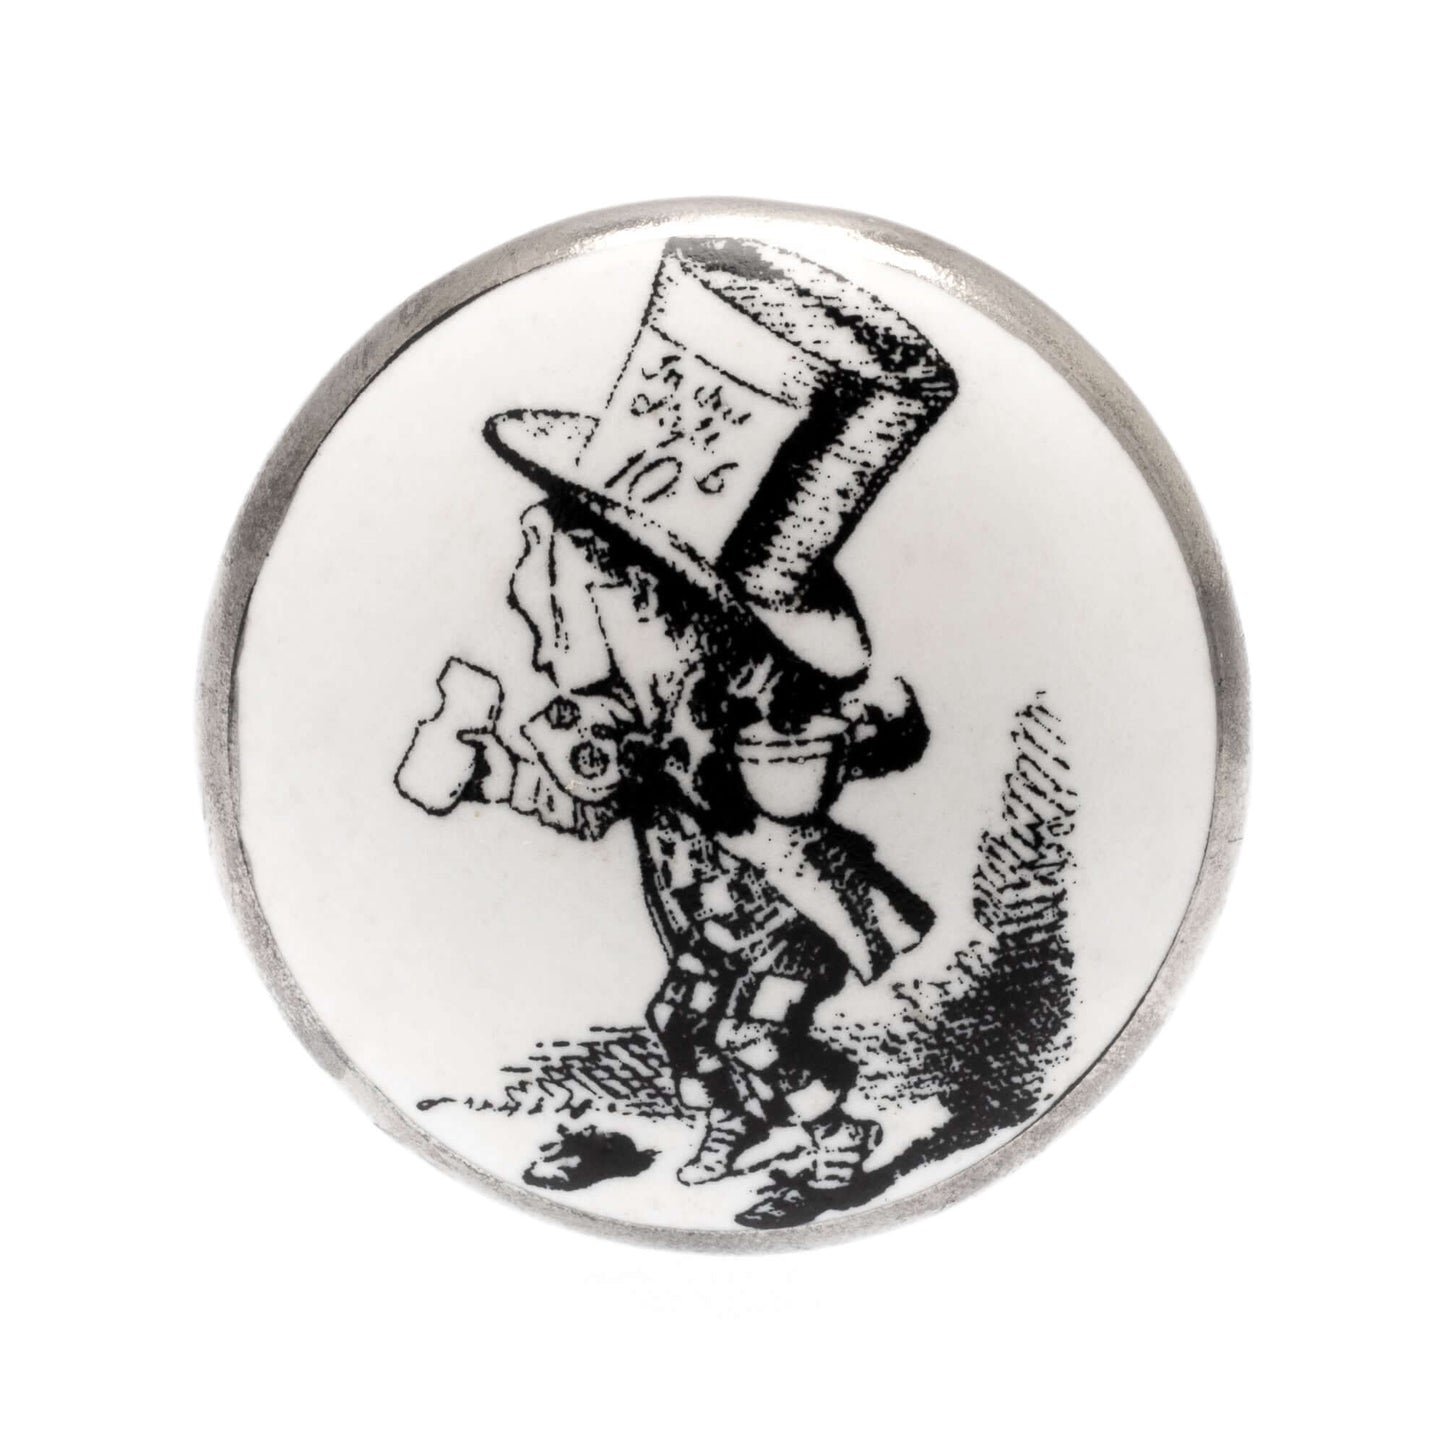 Ceramic Cupboard Knob in Wonderland Mad Hatter Top Hat Antique Silver